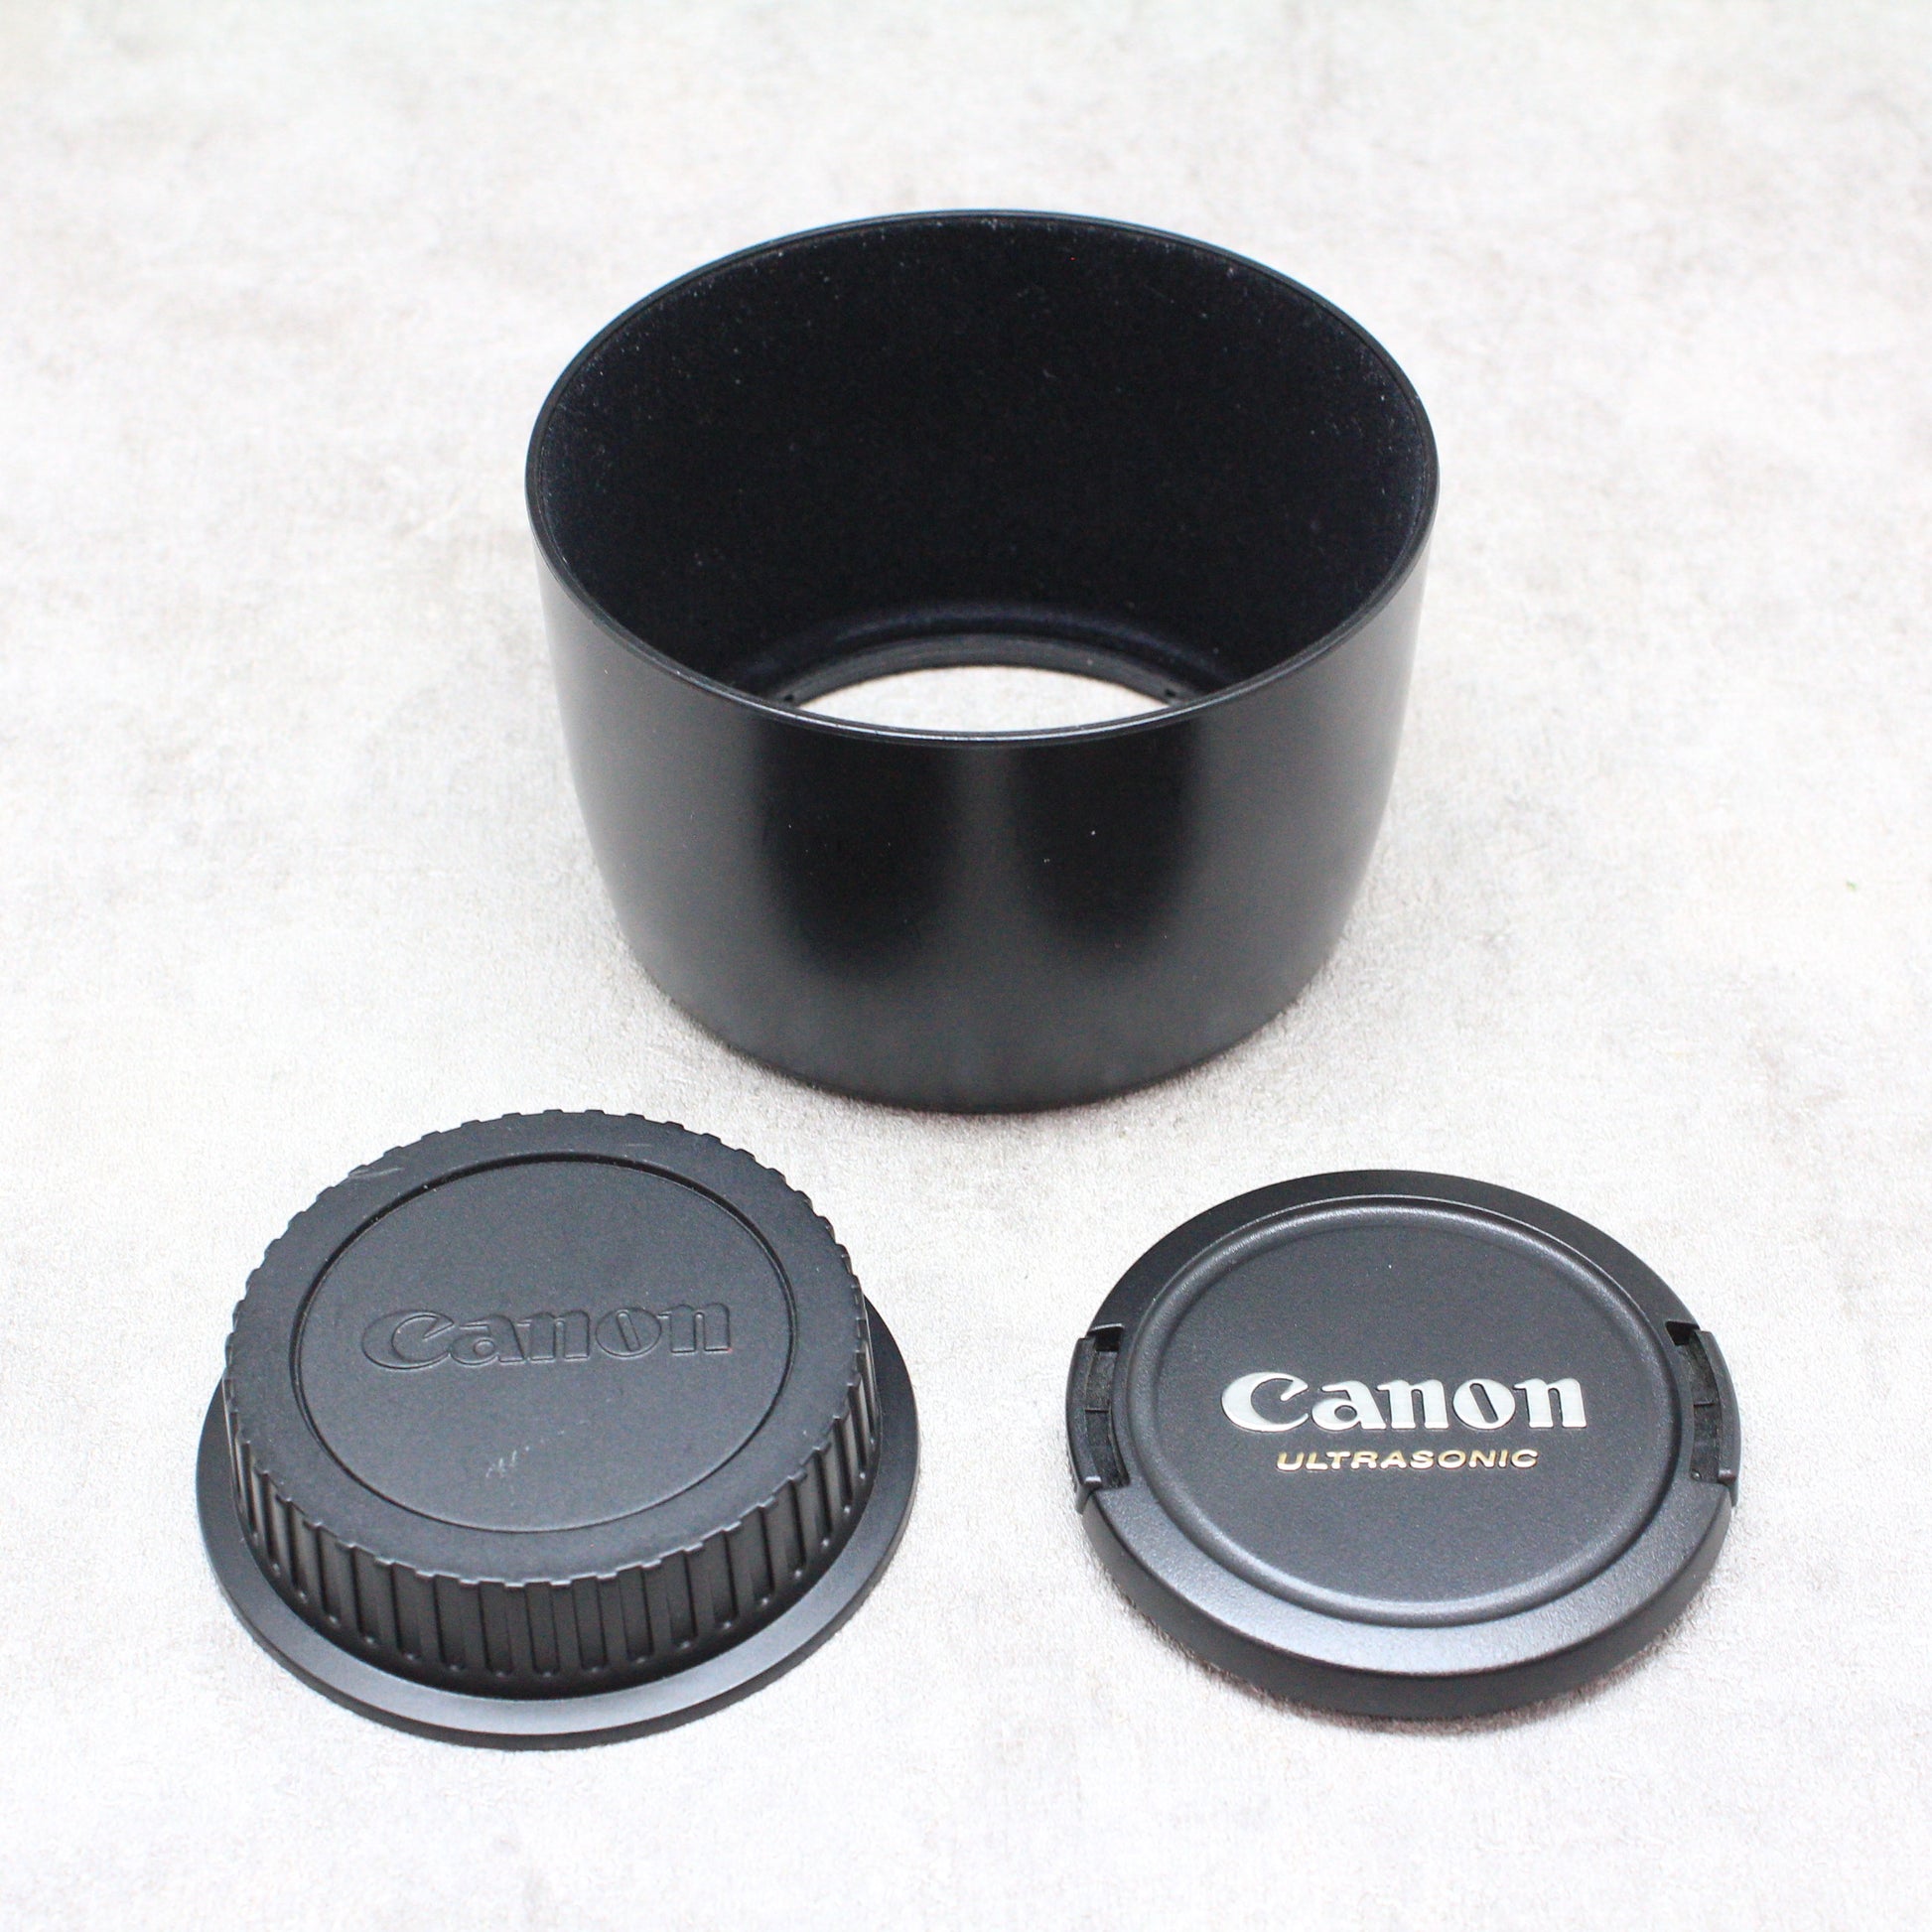 中古品 Canon EF85mm F1.8 USM【10月21日(土) youtube生配信でご紹介】